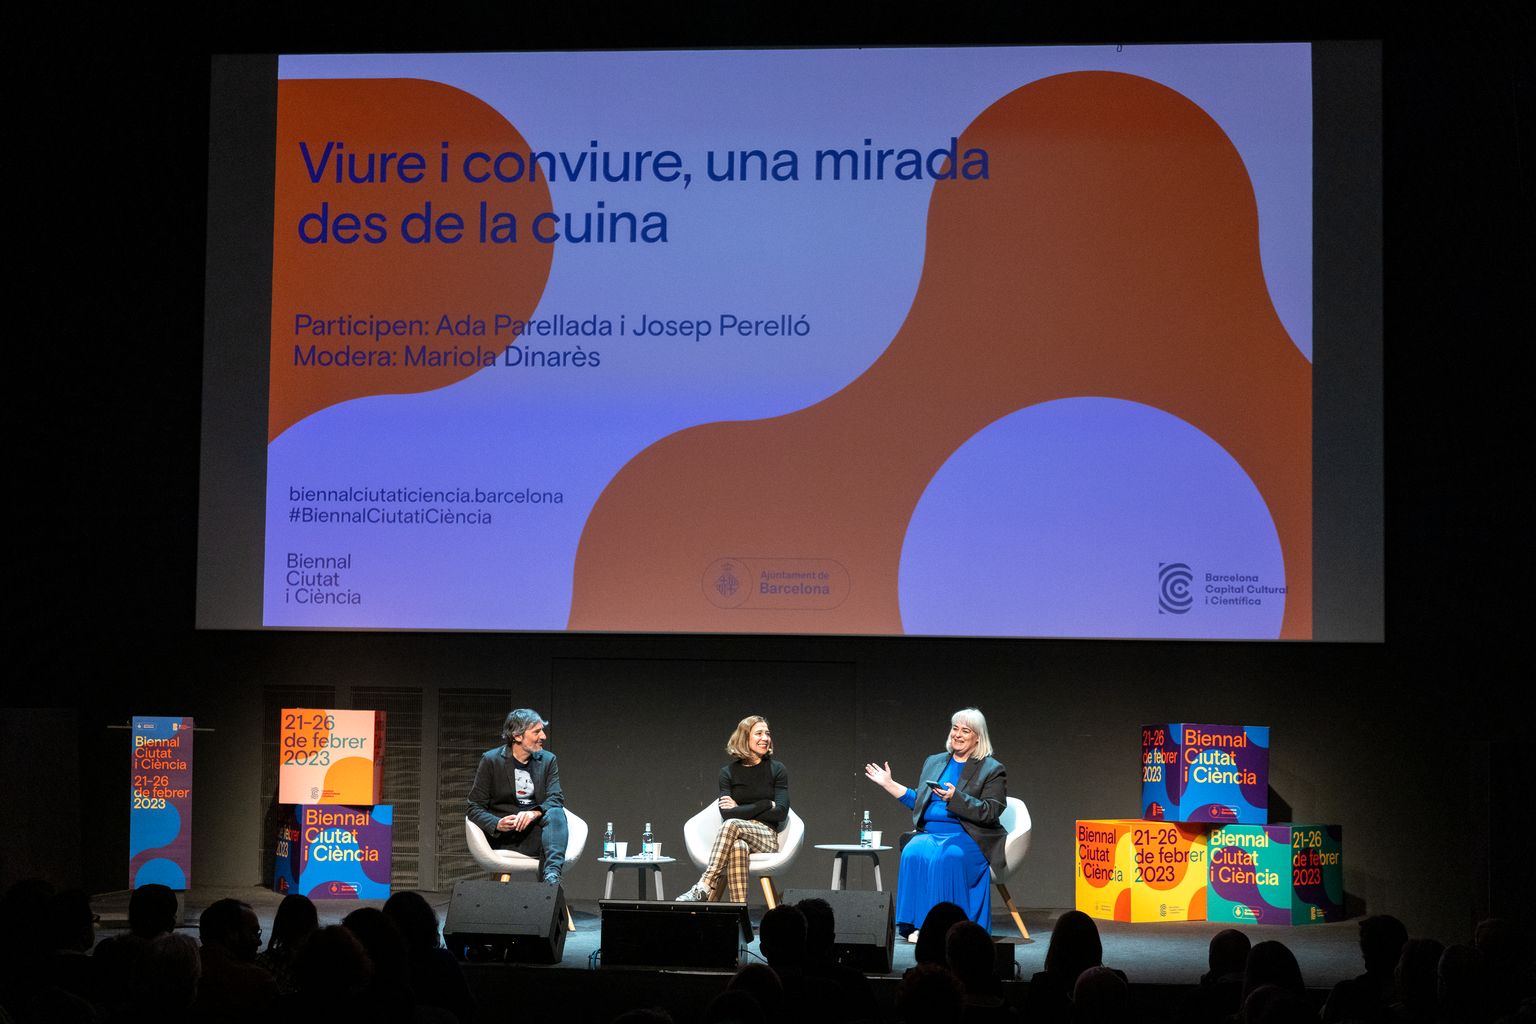 Els ponents Ada Parellada i Josep Perelló participen en la xerrada «Viure i conviure, una mirada des de la cuina», en què Mariola Dinarès fa de moderadora. Tot això té lloc a l’auditori del CCCB per la Biennal de la Ciència 2023.